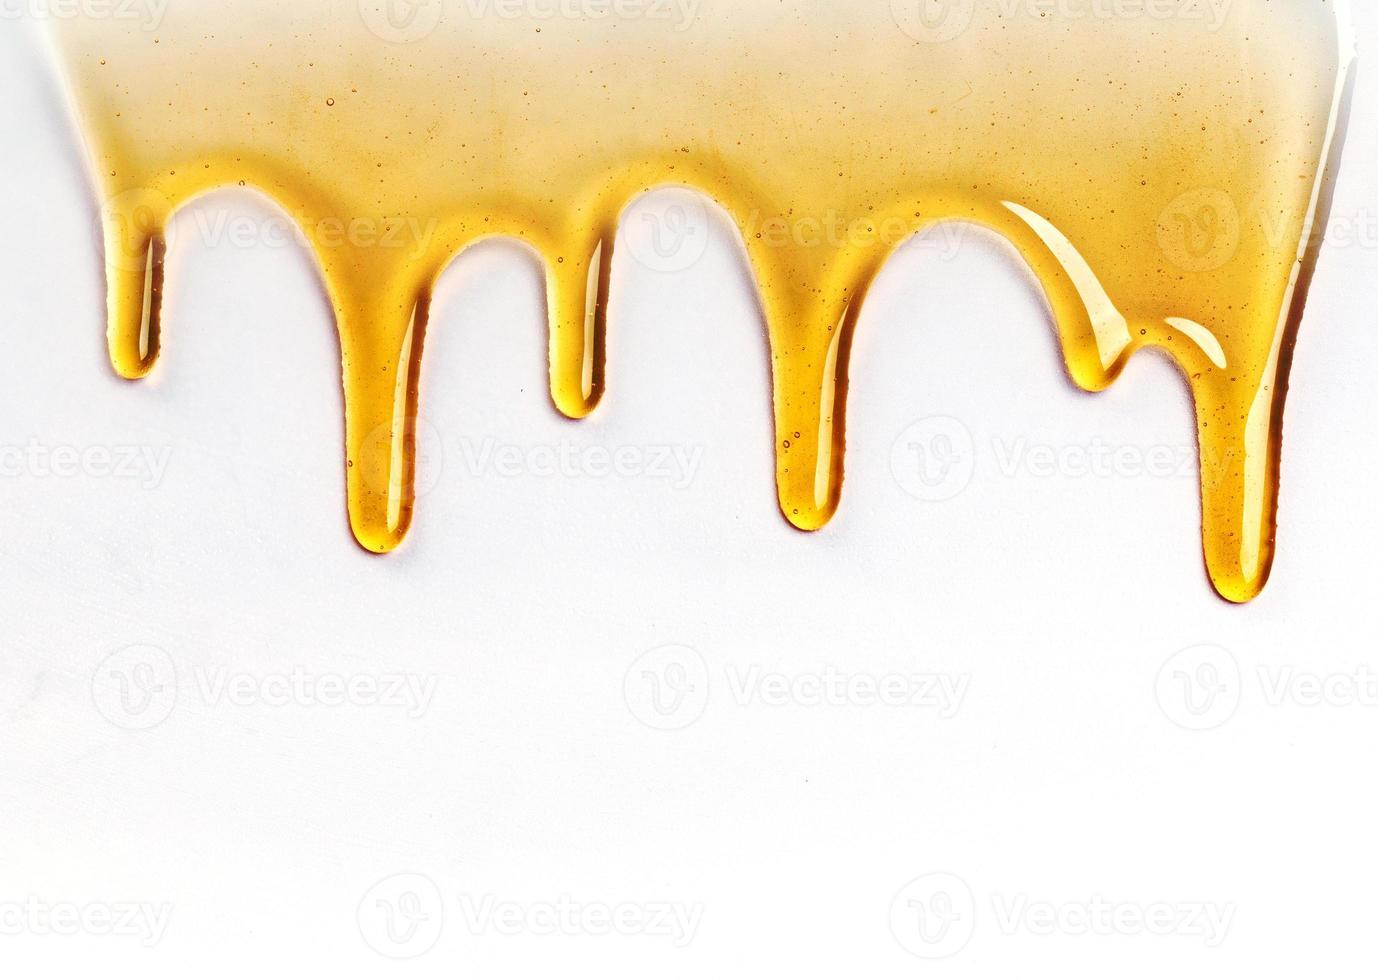 goteo de miel dulce dorada que fluye por el marco desde la parte superior sobre blanco con espacio de copia y texto foto